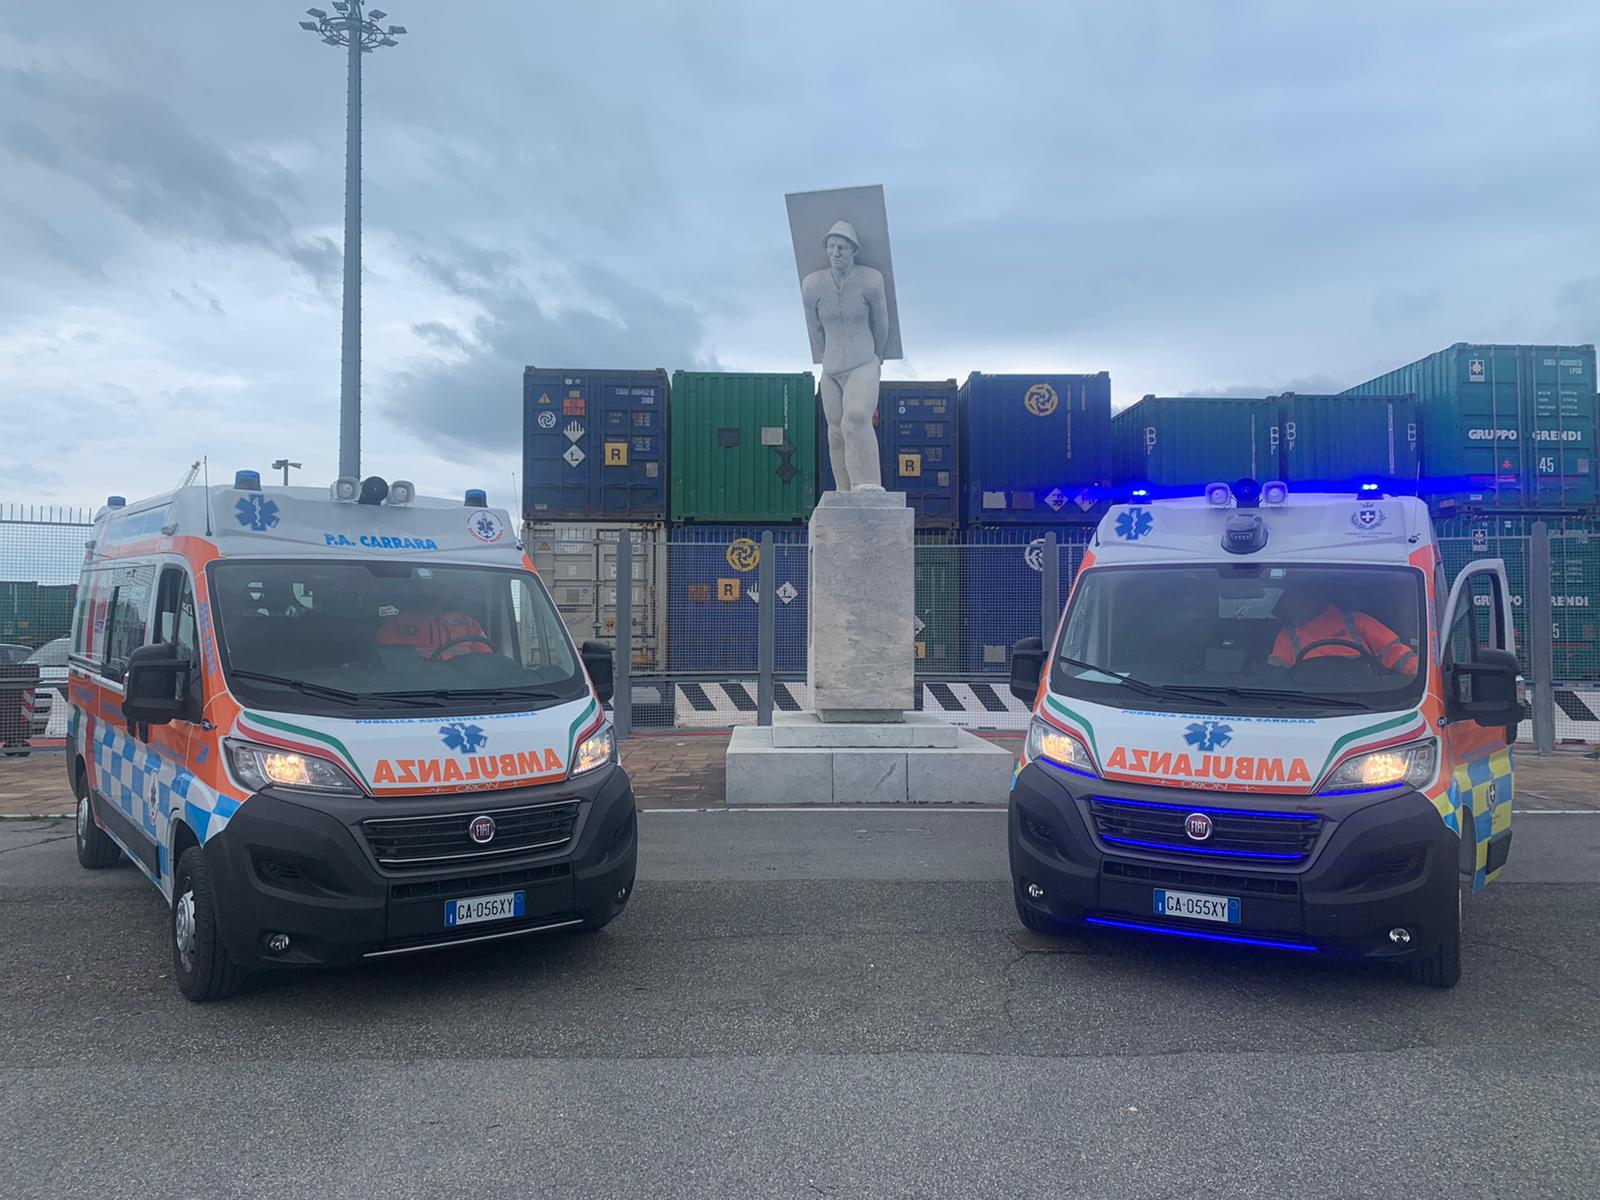 Emergenza Covid, pronte a entrare in servizio le due ambulanze donate dalla Fondazione Marmo alla Pubblica Assistenza di Carrara